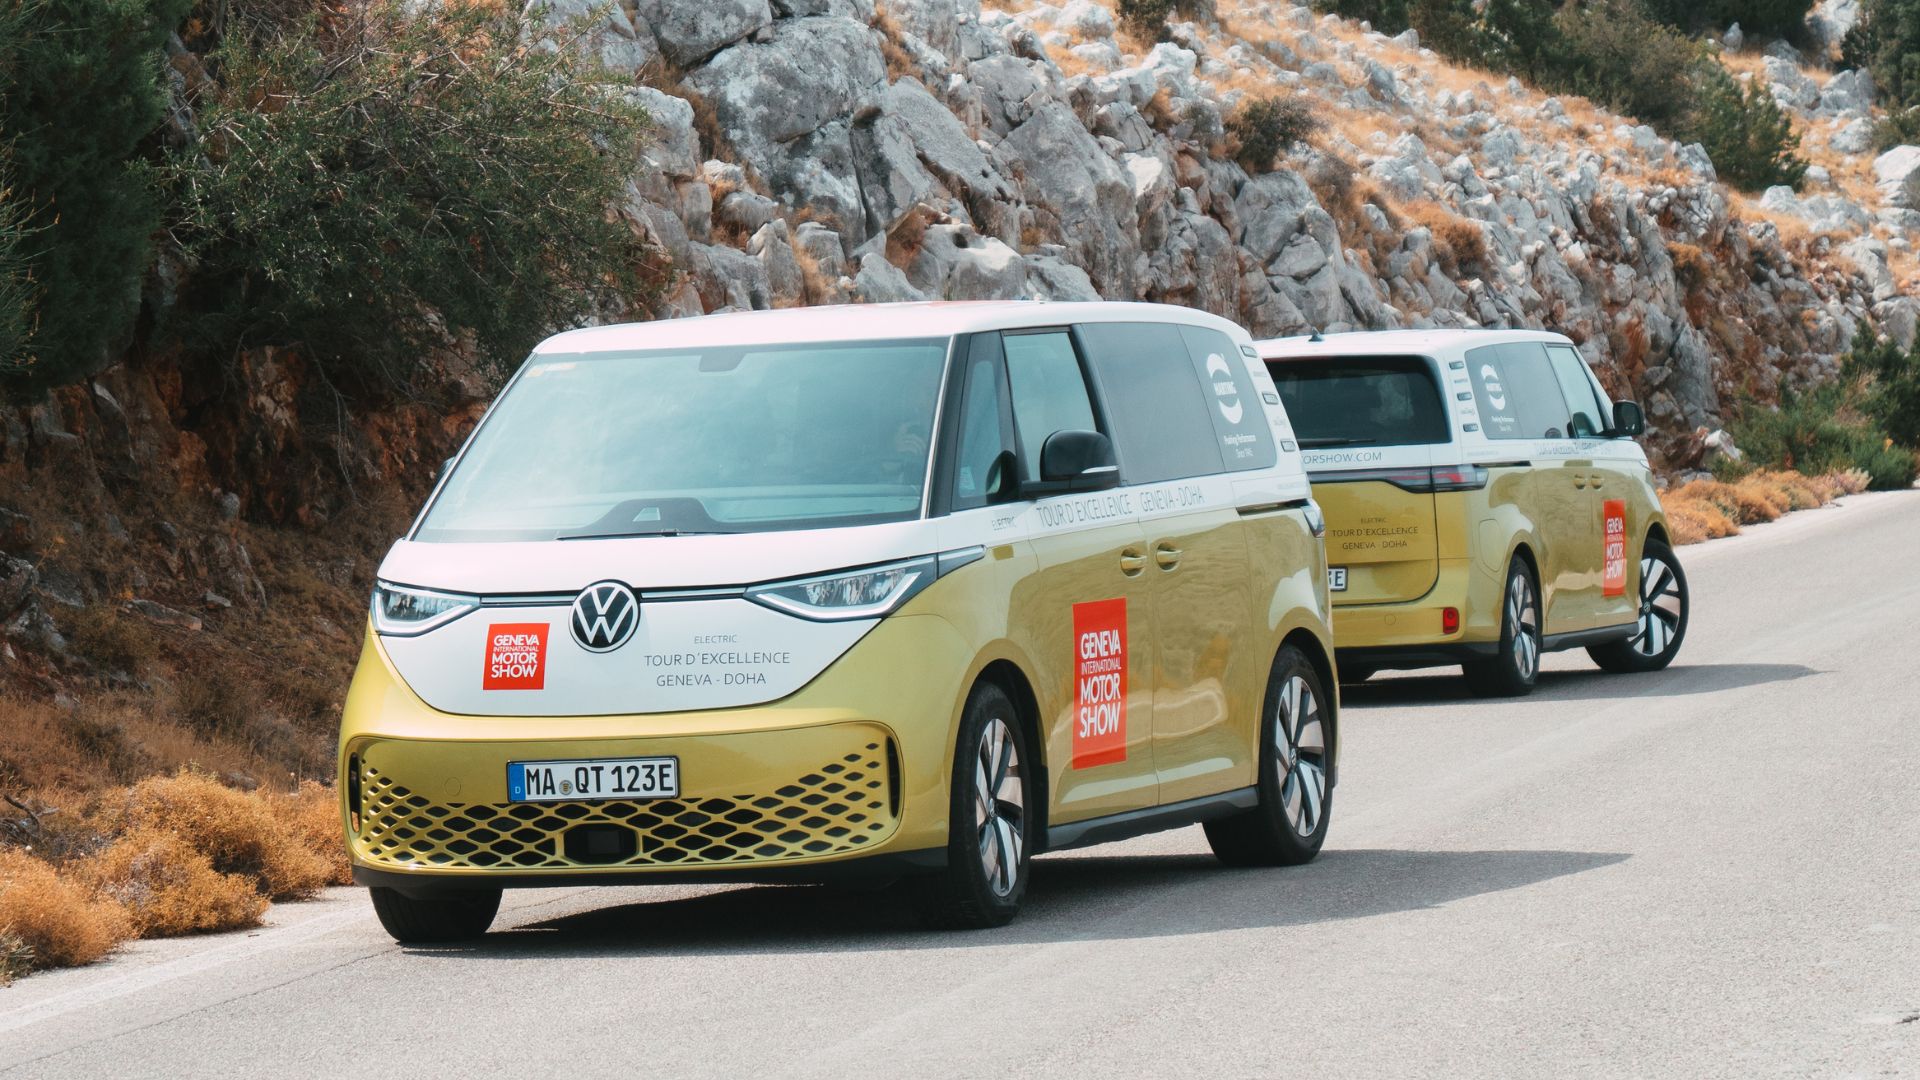 Tour d’Excellence: Ένα απίστευτο ταξίδι για 2 Volkswagen ID. Buzz